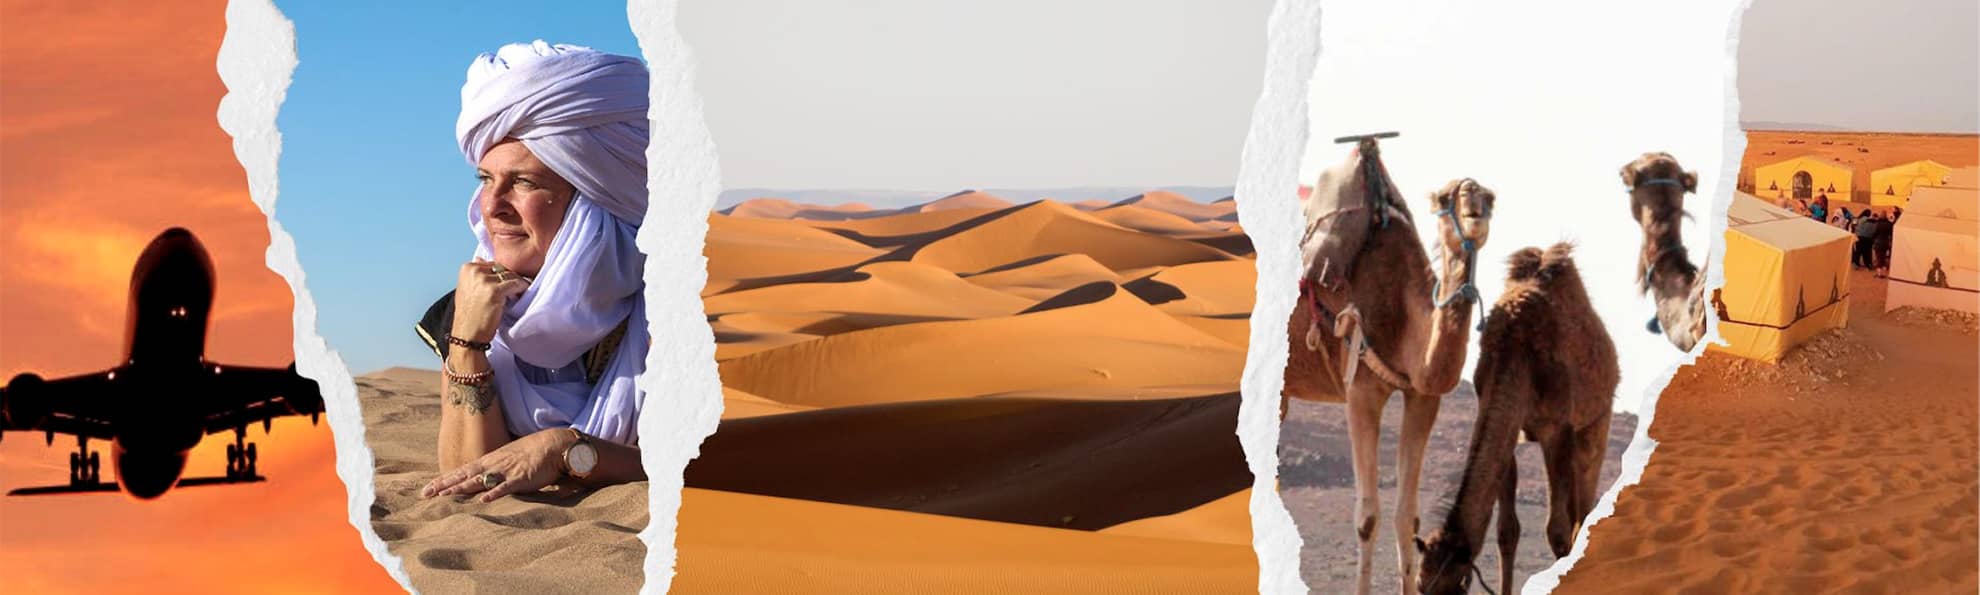 laeti-event-sejours-au-maroc-desert-mixte